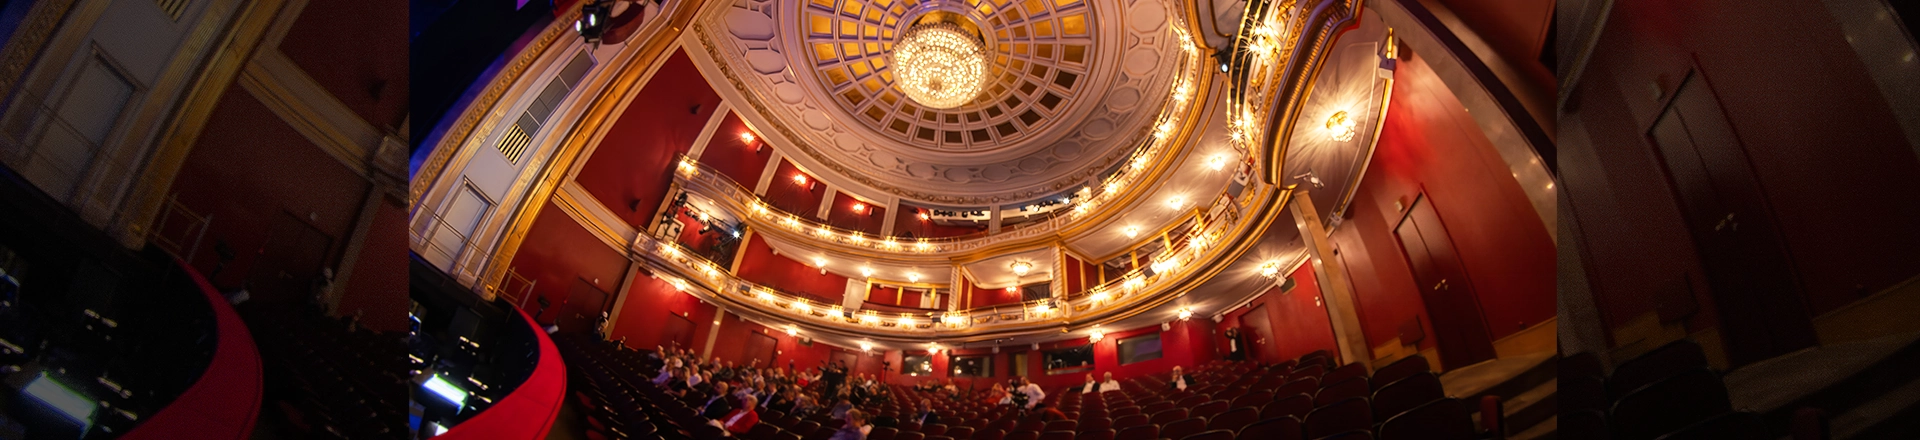 Wyjątkowe miejsce: Teatr Wielki im. S. Moniuszki w Poznaniu